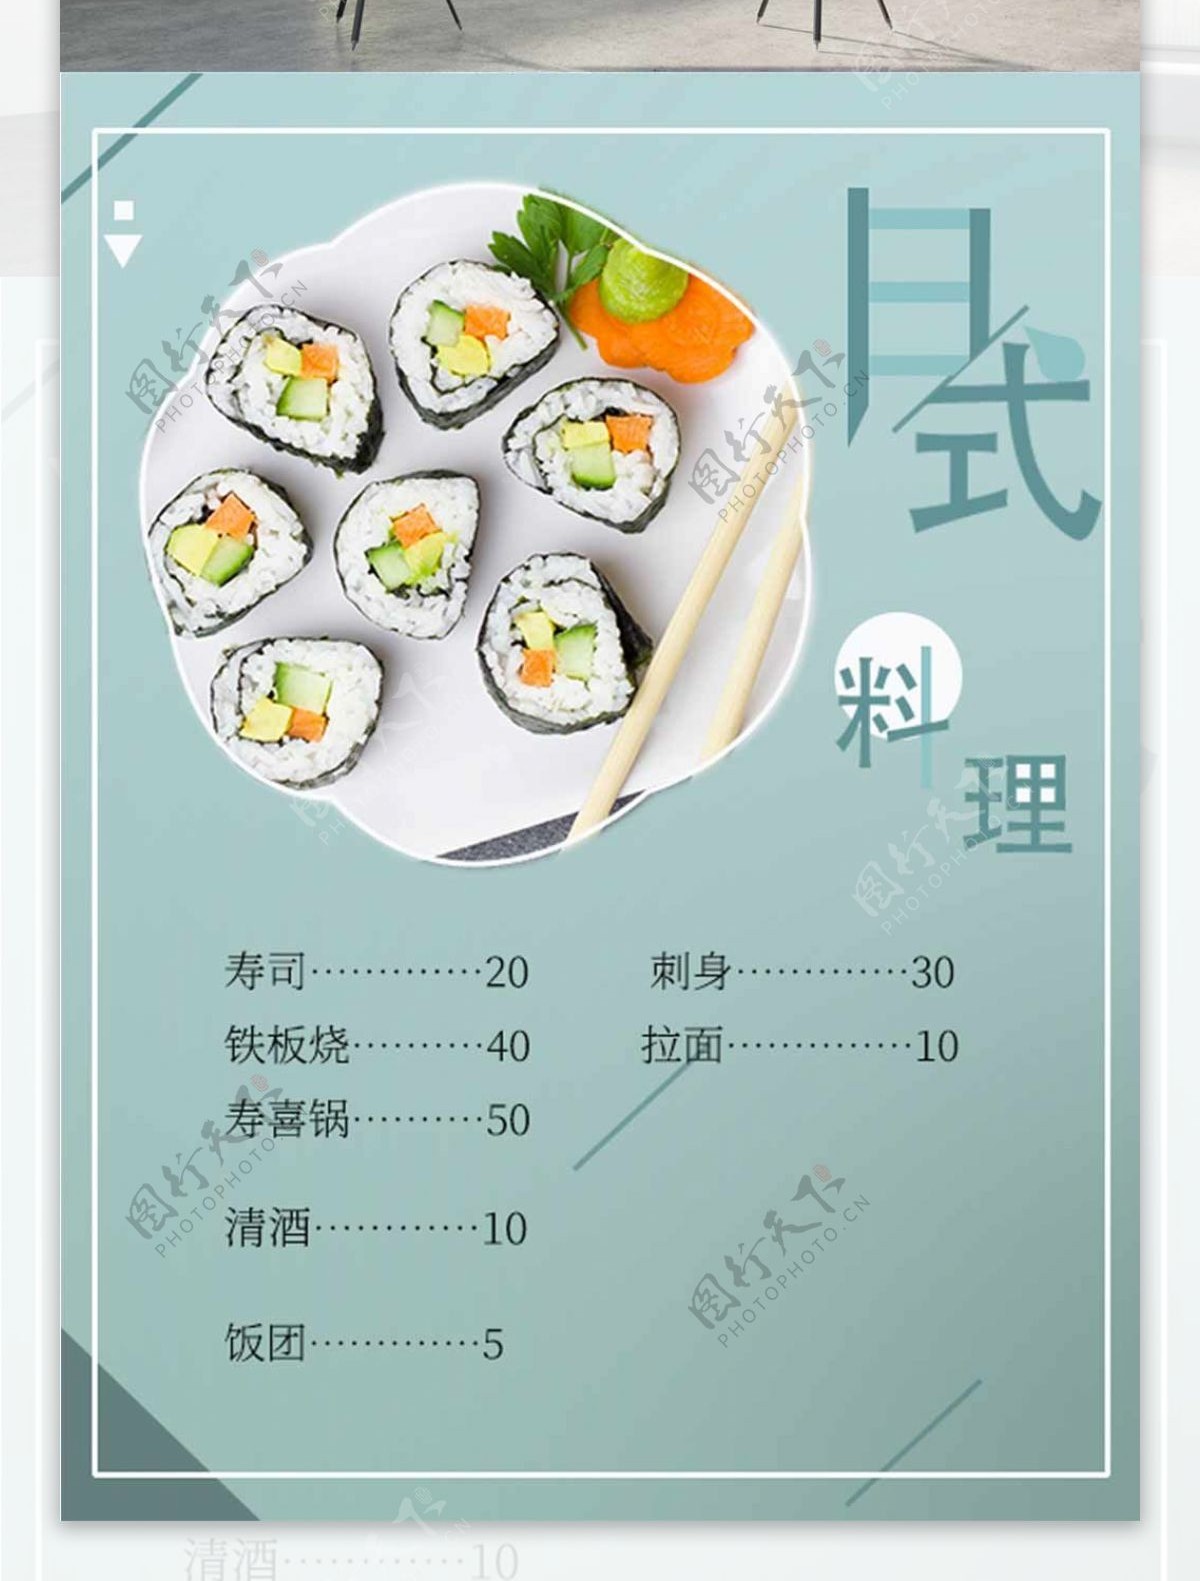 日式料理菜单海报